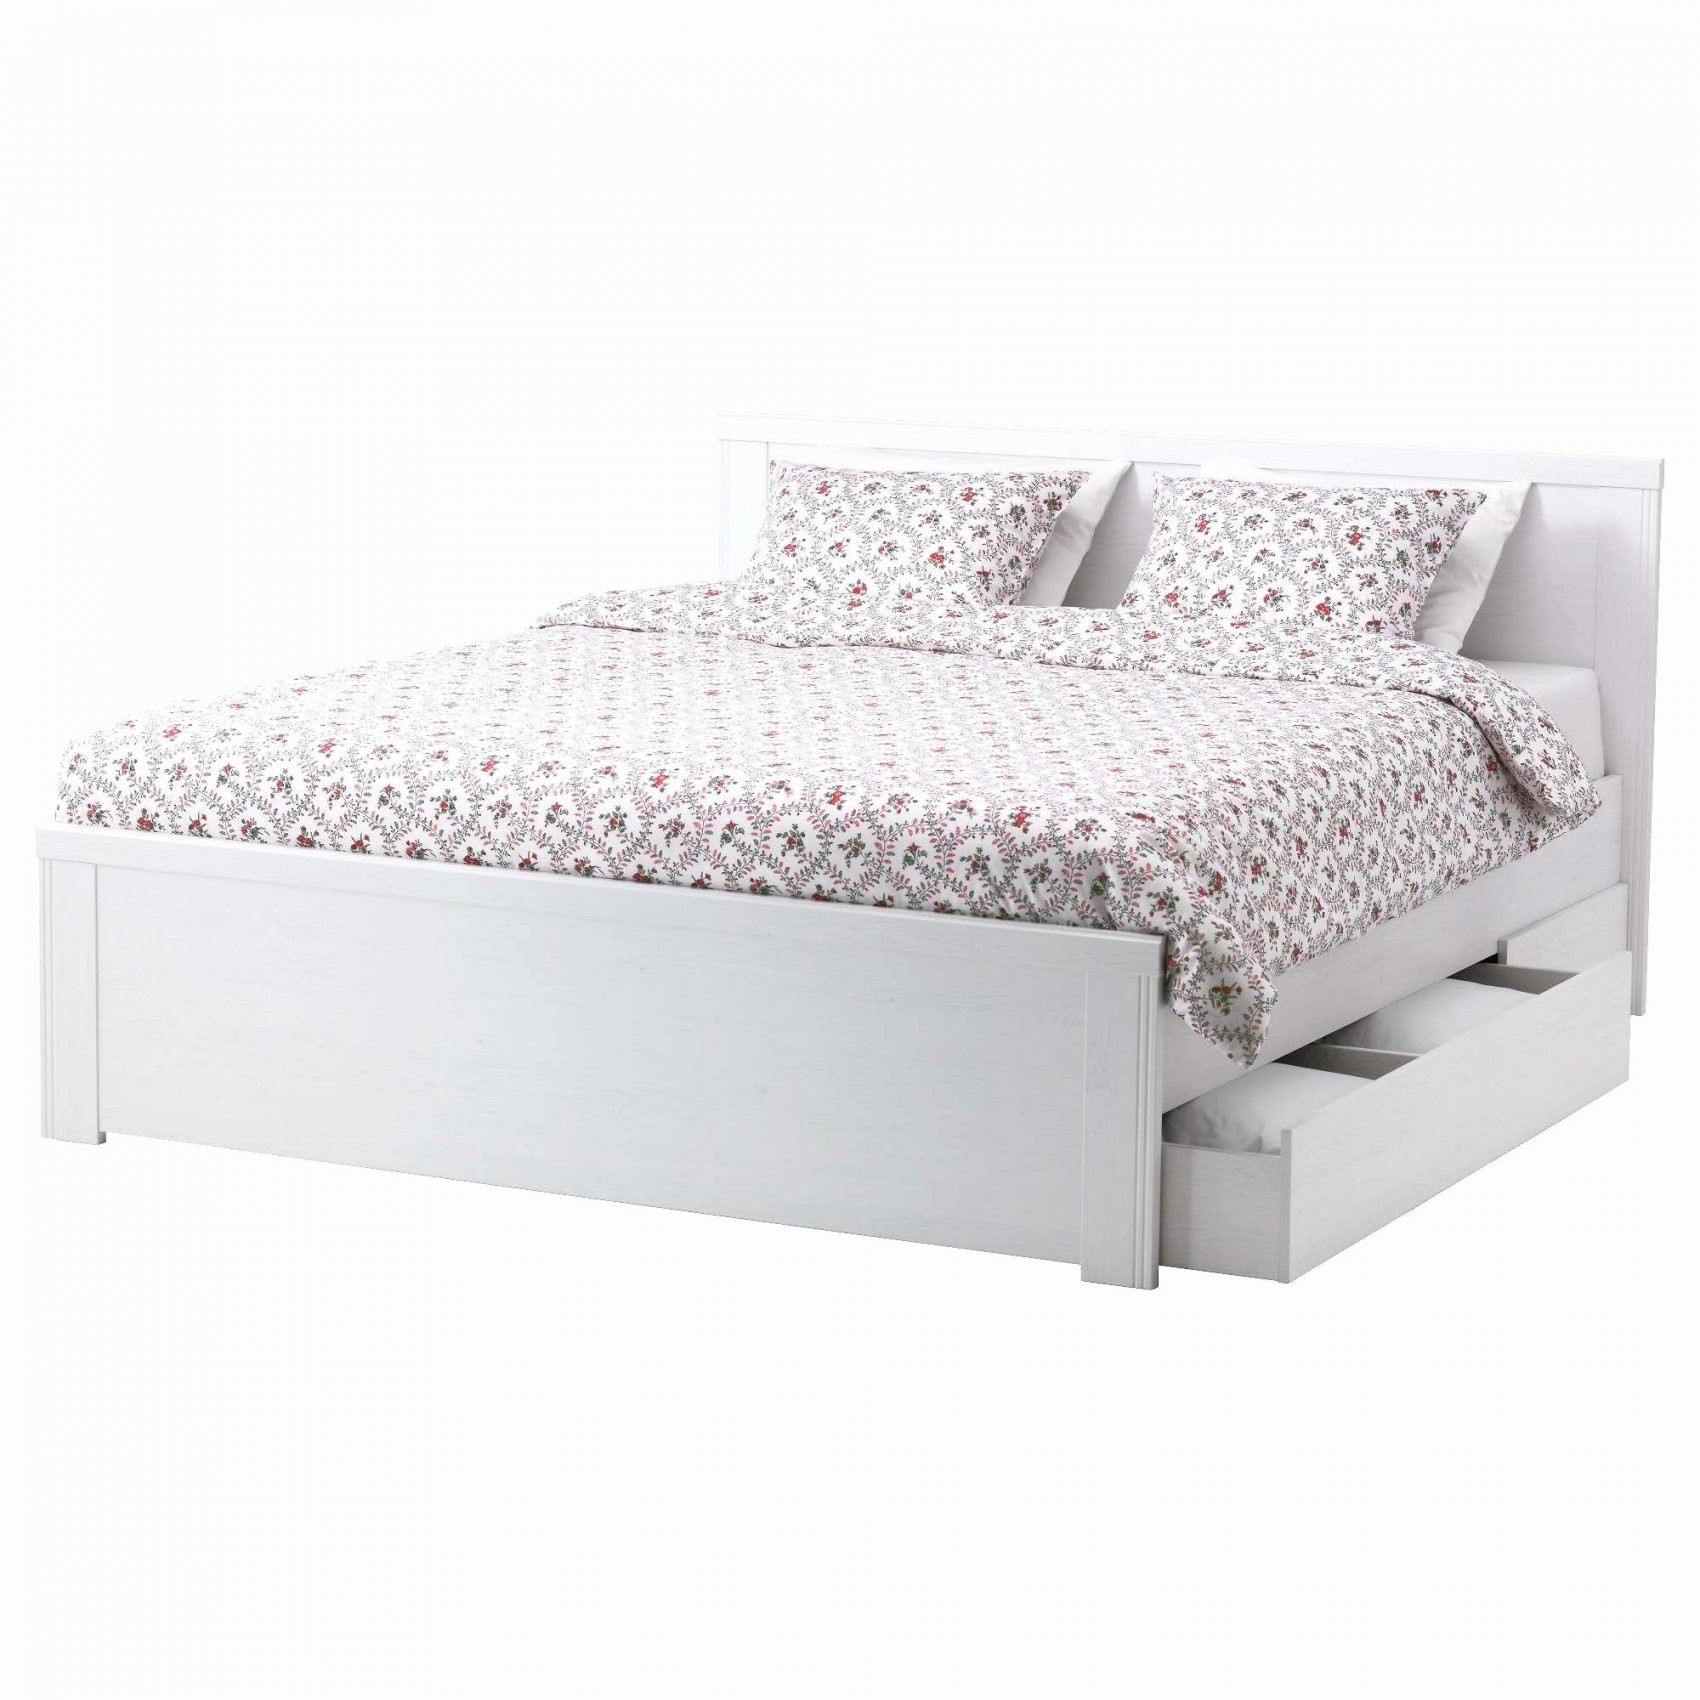 Ikea Betten 160×200 Weiss Frisch 30 Luxury Ikea Skorva Bed von Ikea Bett Weiß 160X200 Bild